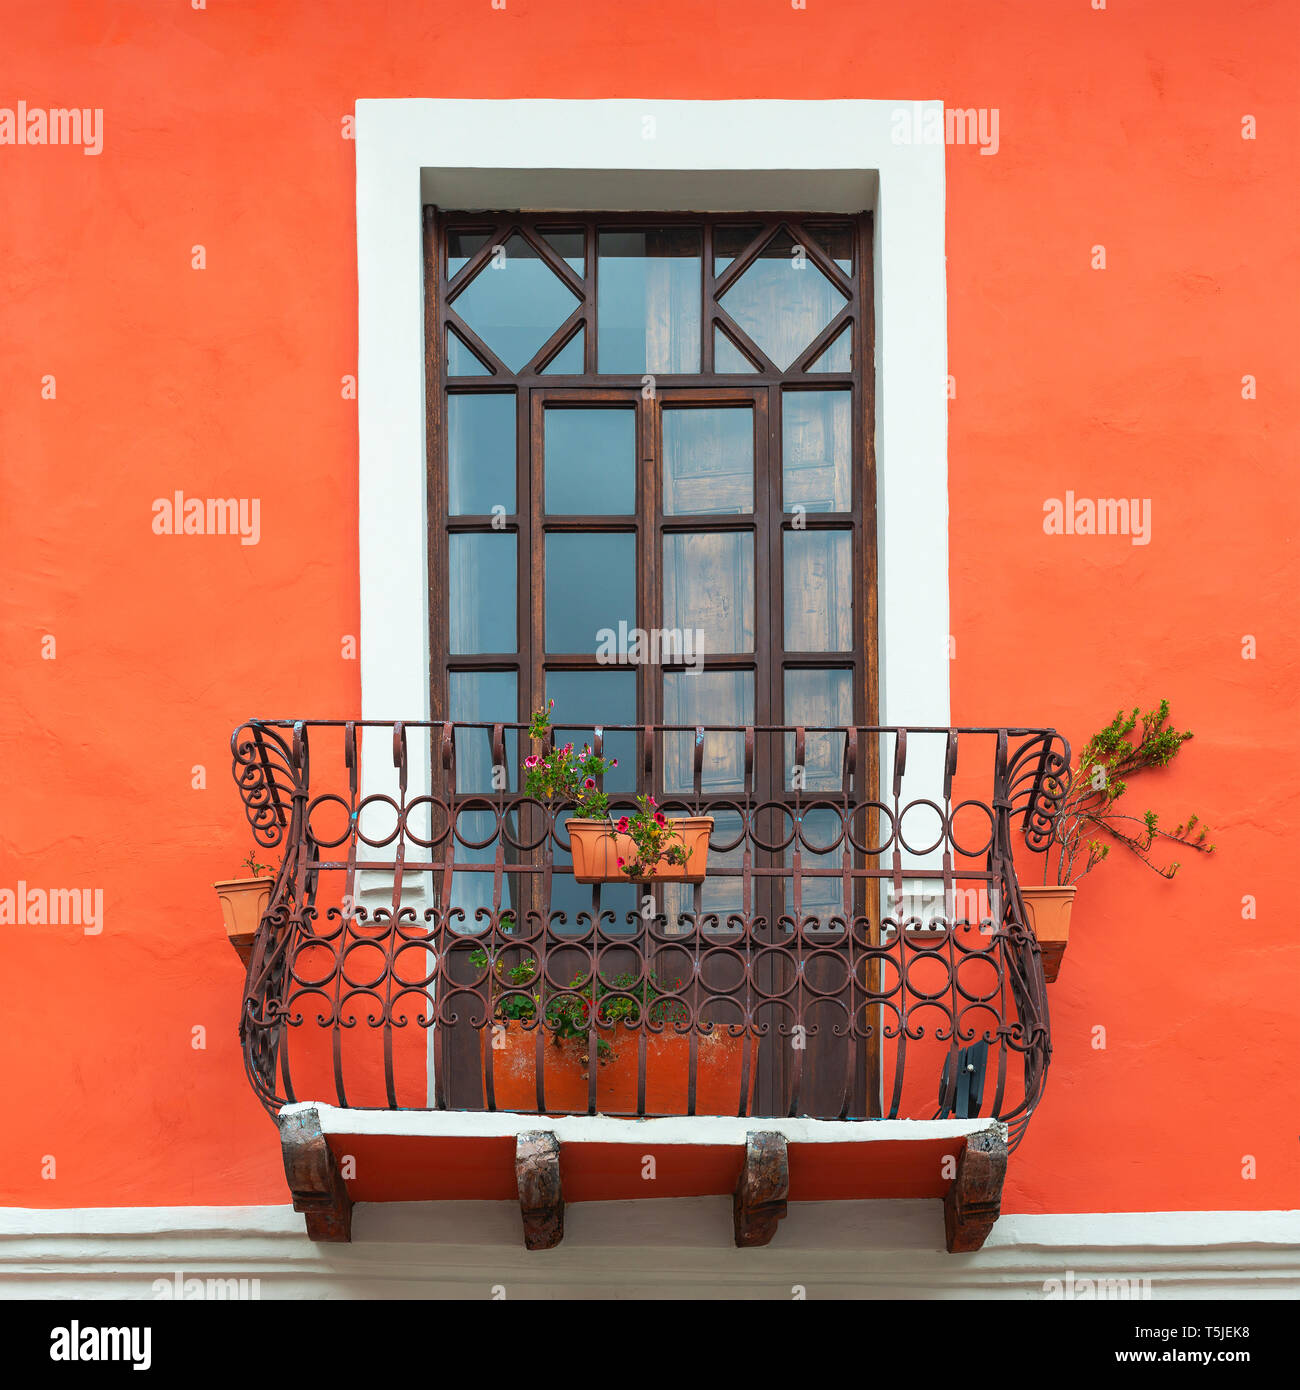 In stile coloniale e balcone con finestra e coralli viventi tonalità arancione facciata a parete nel centro storico della città di Cuenca, Ecuador. Foto Stock